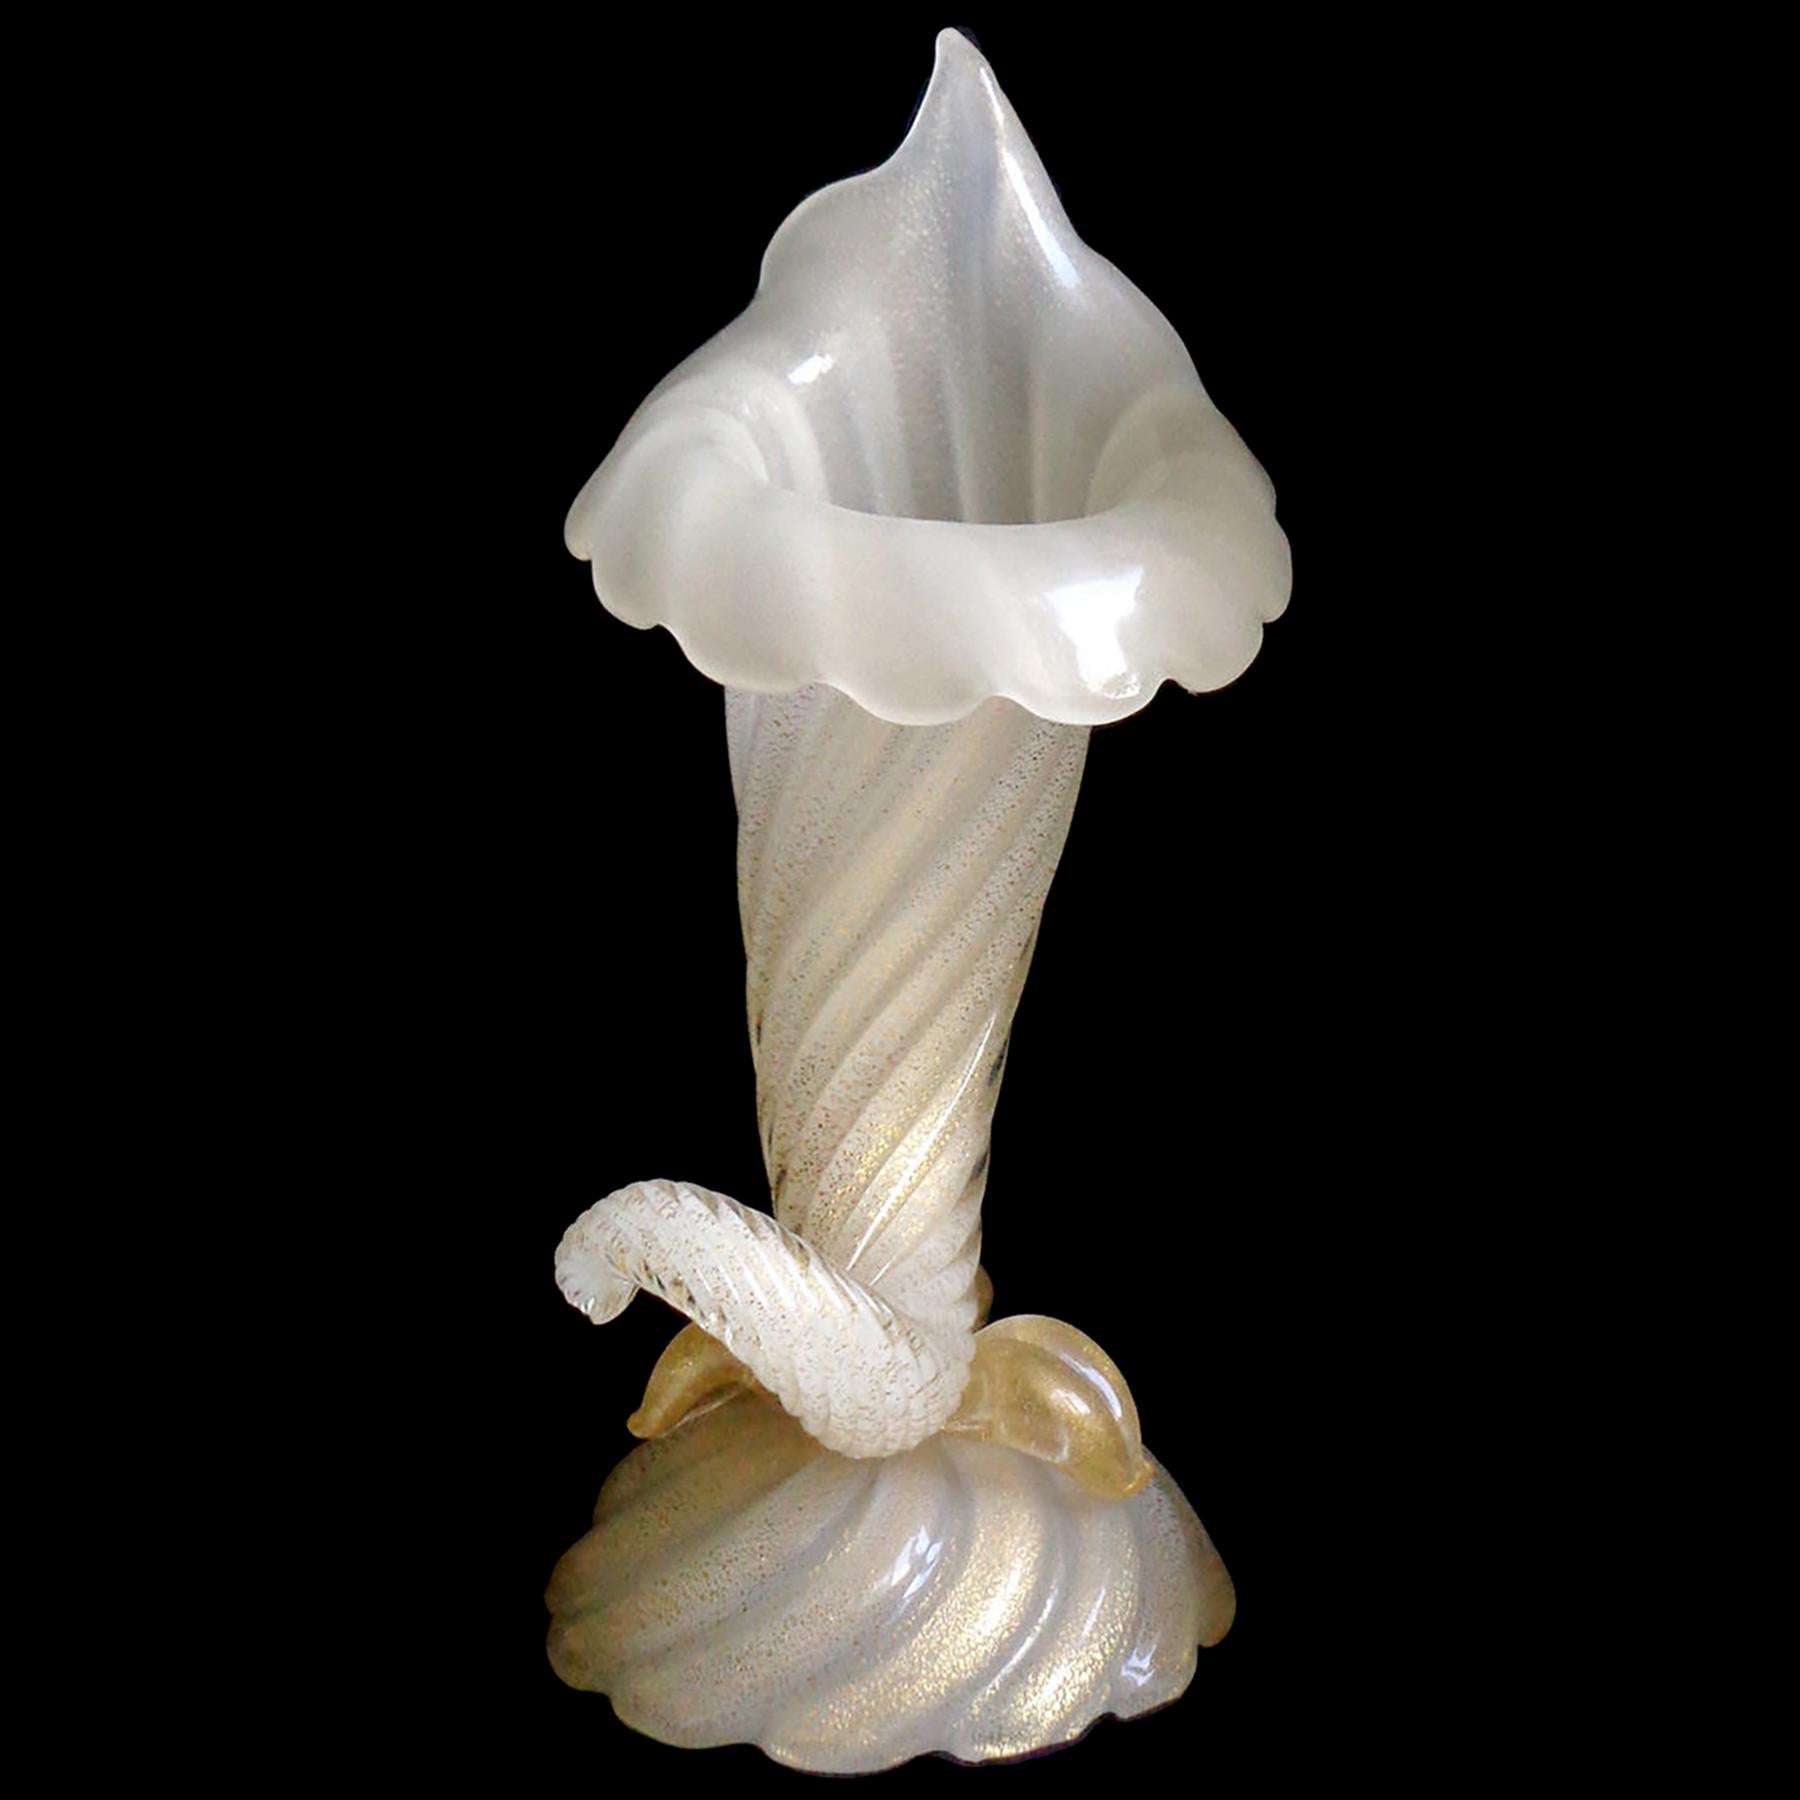 Magnifique vase à cornes d'abondance en verre d'art italien soufflé à la main à Murano, blanc opale et mouchetures d'or. Documenté auprès du designer Archimede Seguso, vers les années 1950, et publié dans son livre. Le vase porte encore l'étiquette